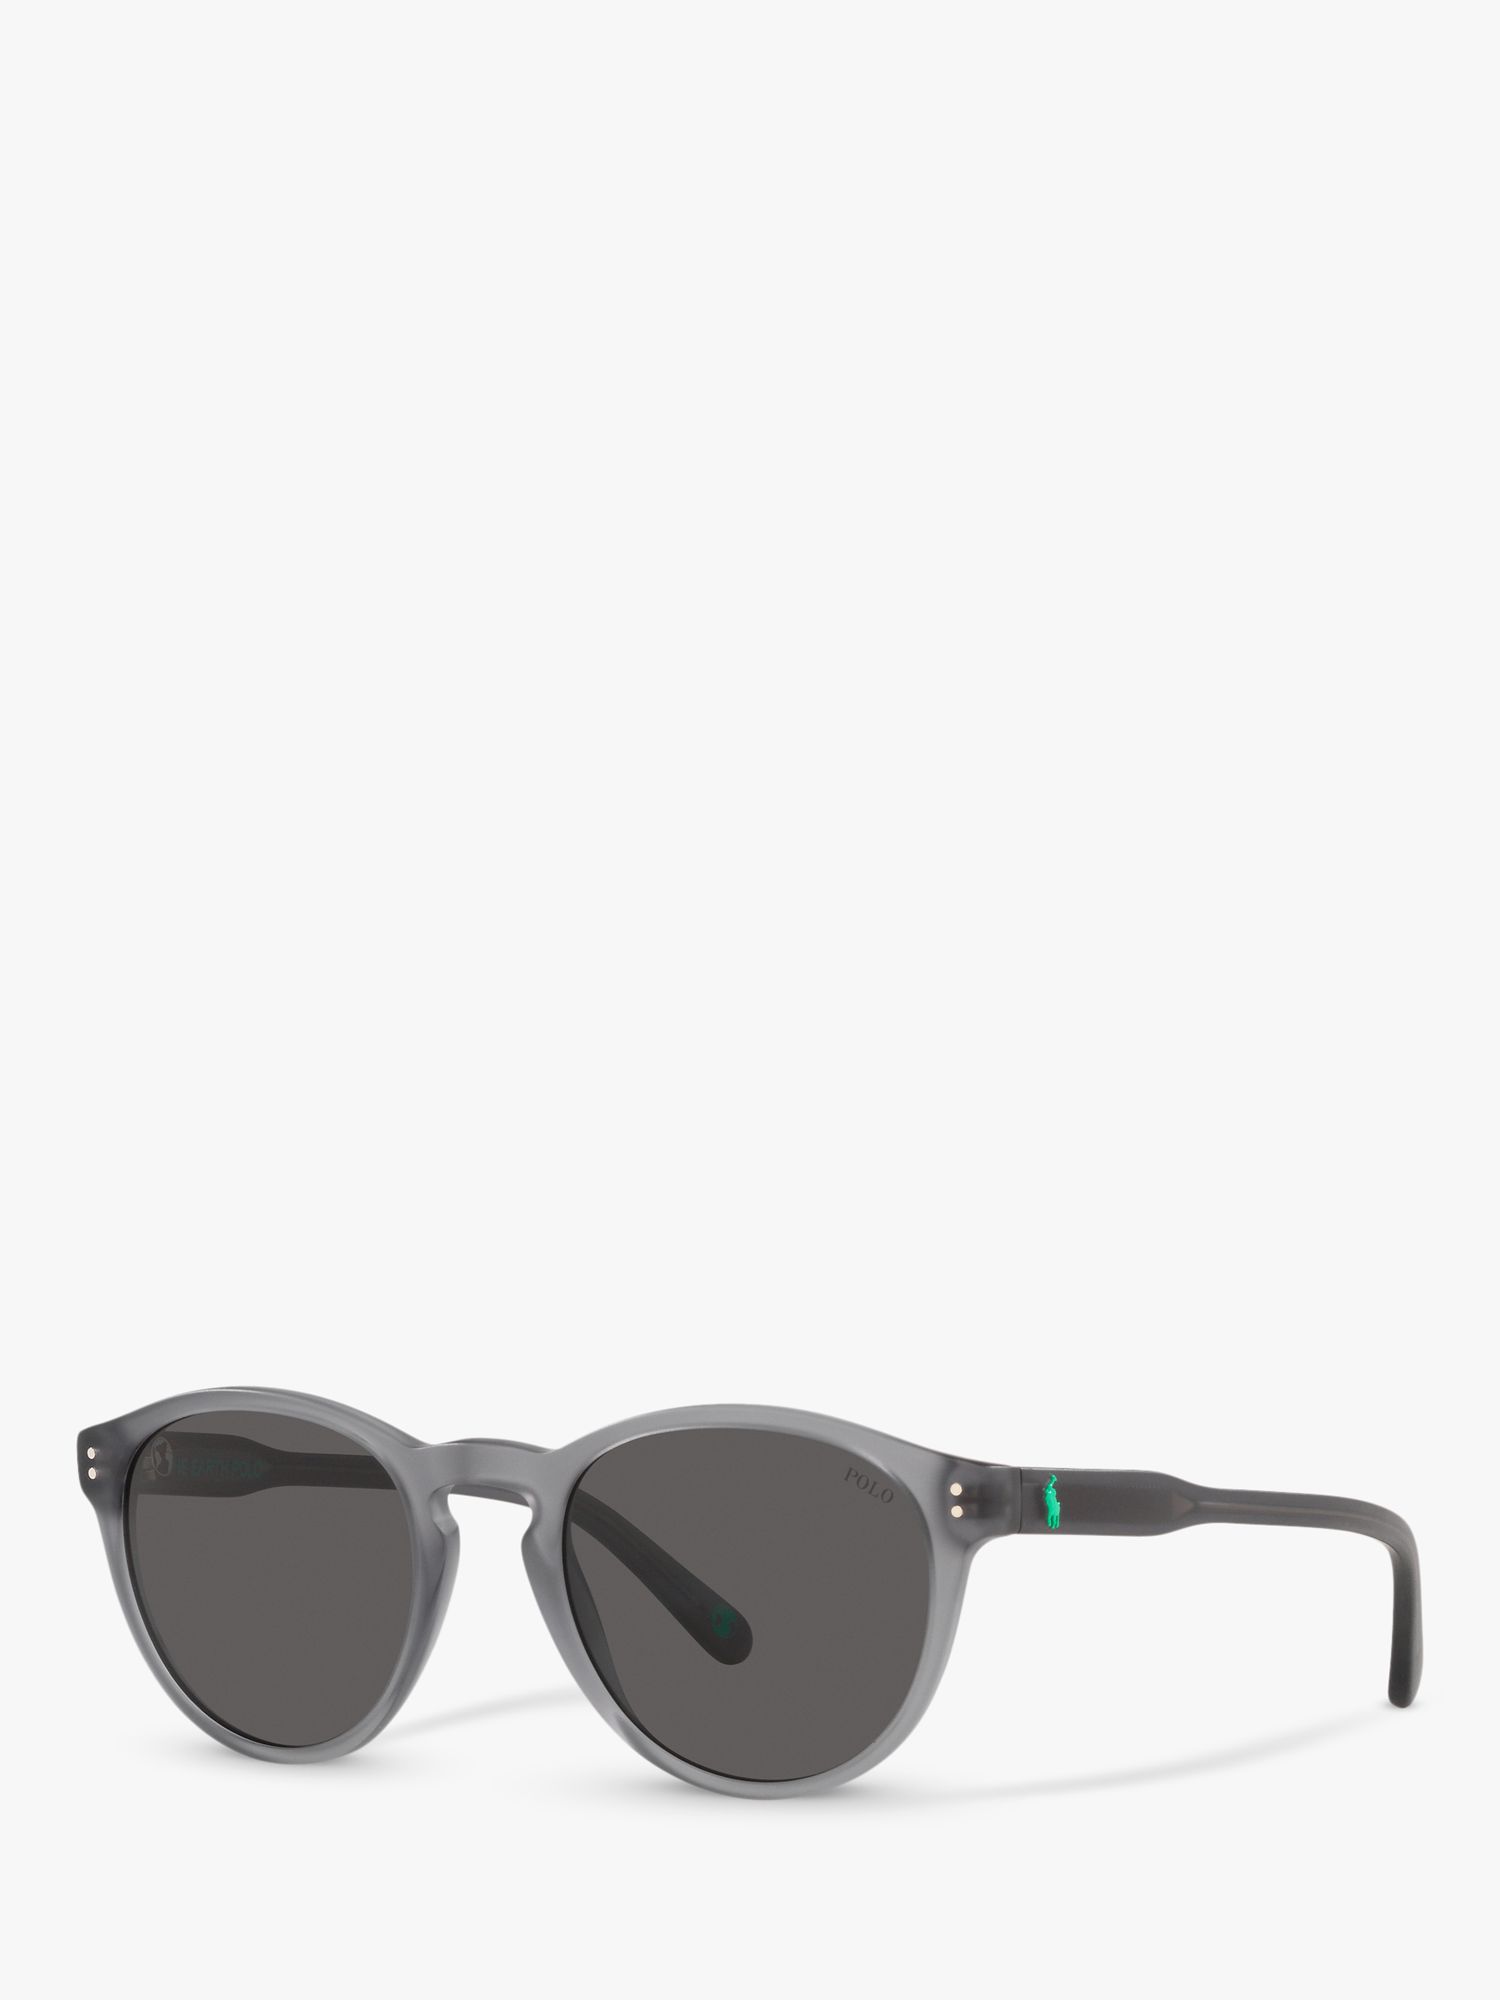 Мужские овальные солнцезащитные очки Ralph Lauren PH4172, серые